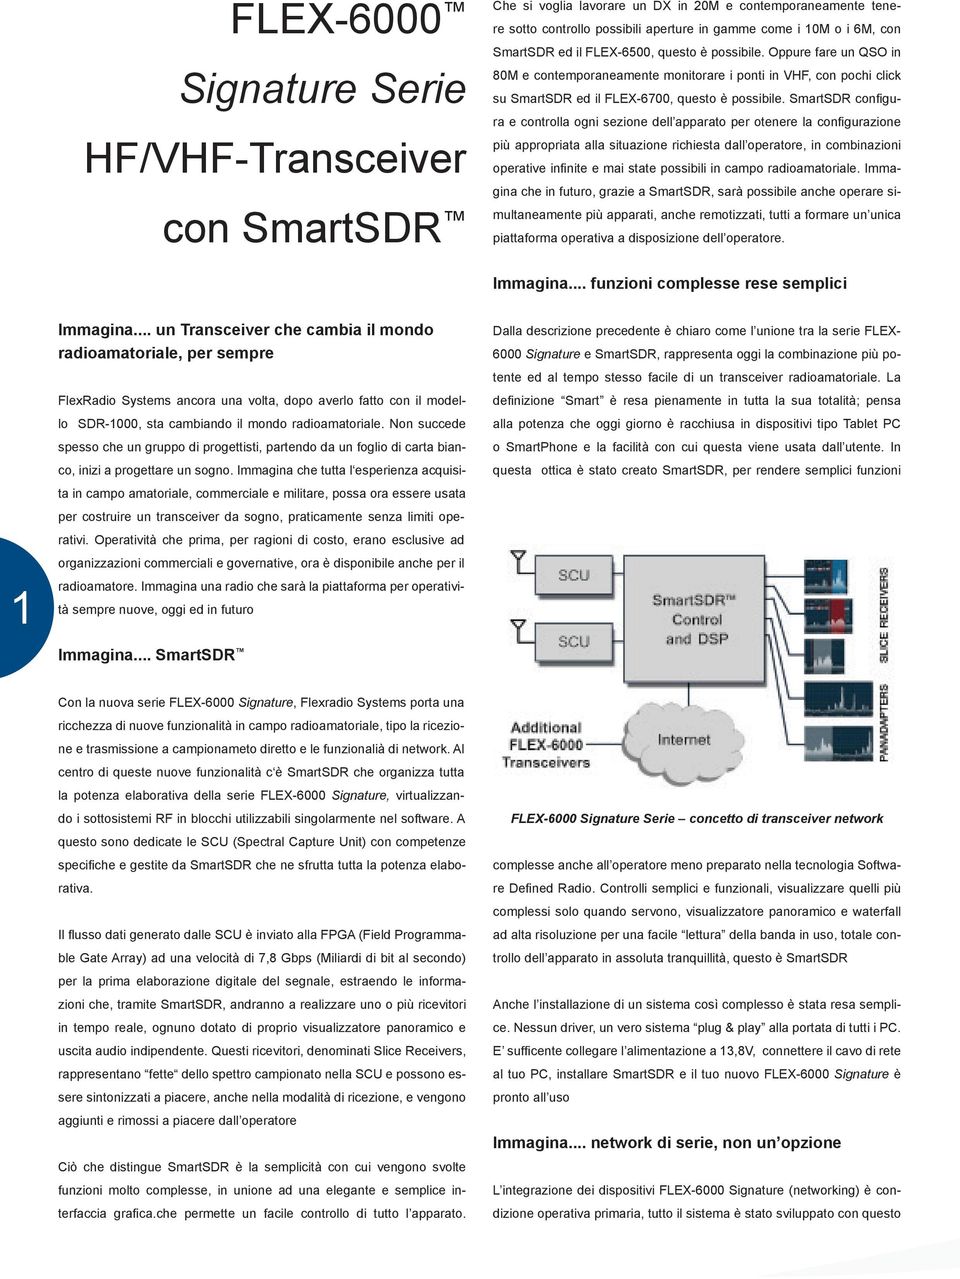 SmartSDR configura e controlla ogni sezione dell apparato per otenere la configurazione più appropriata alla situazione richiesta dall operatore, in combinazioni operative infinite e mai state